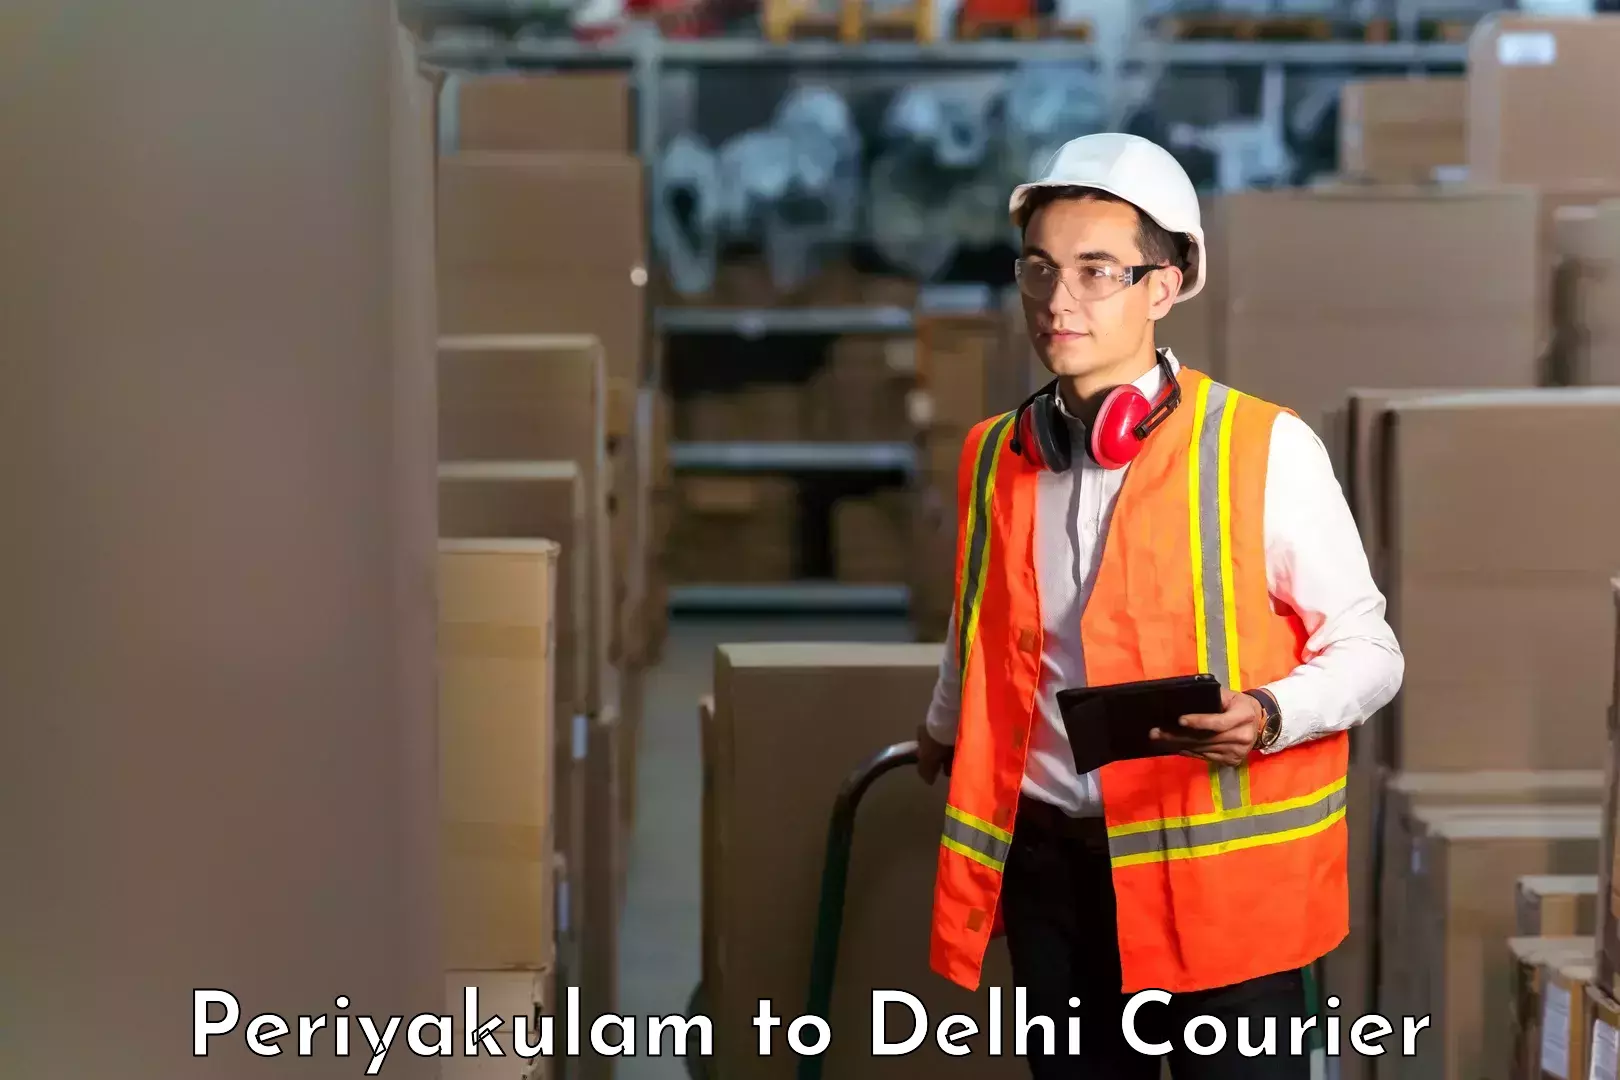 Shipping and handling Periyakulam to University of Delhi